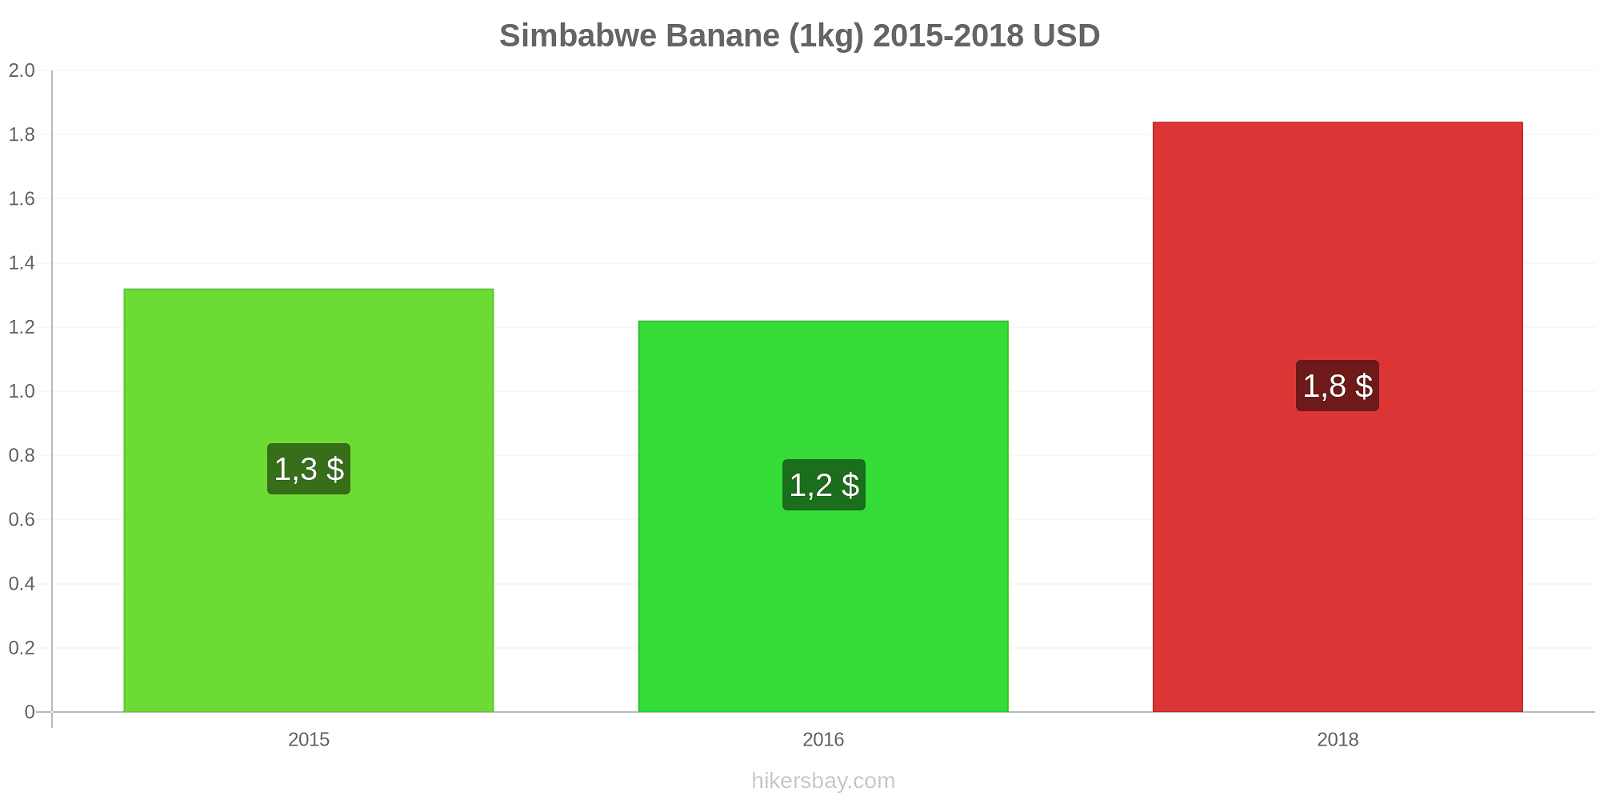 Simbabwe Preisänderungen Bananen (1kg) hikersbay.com